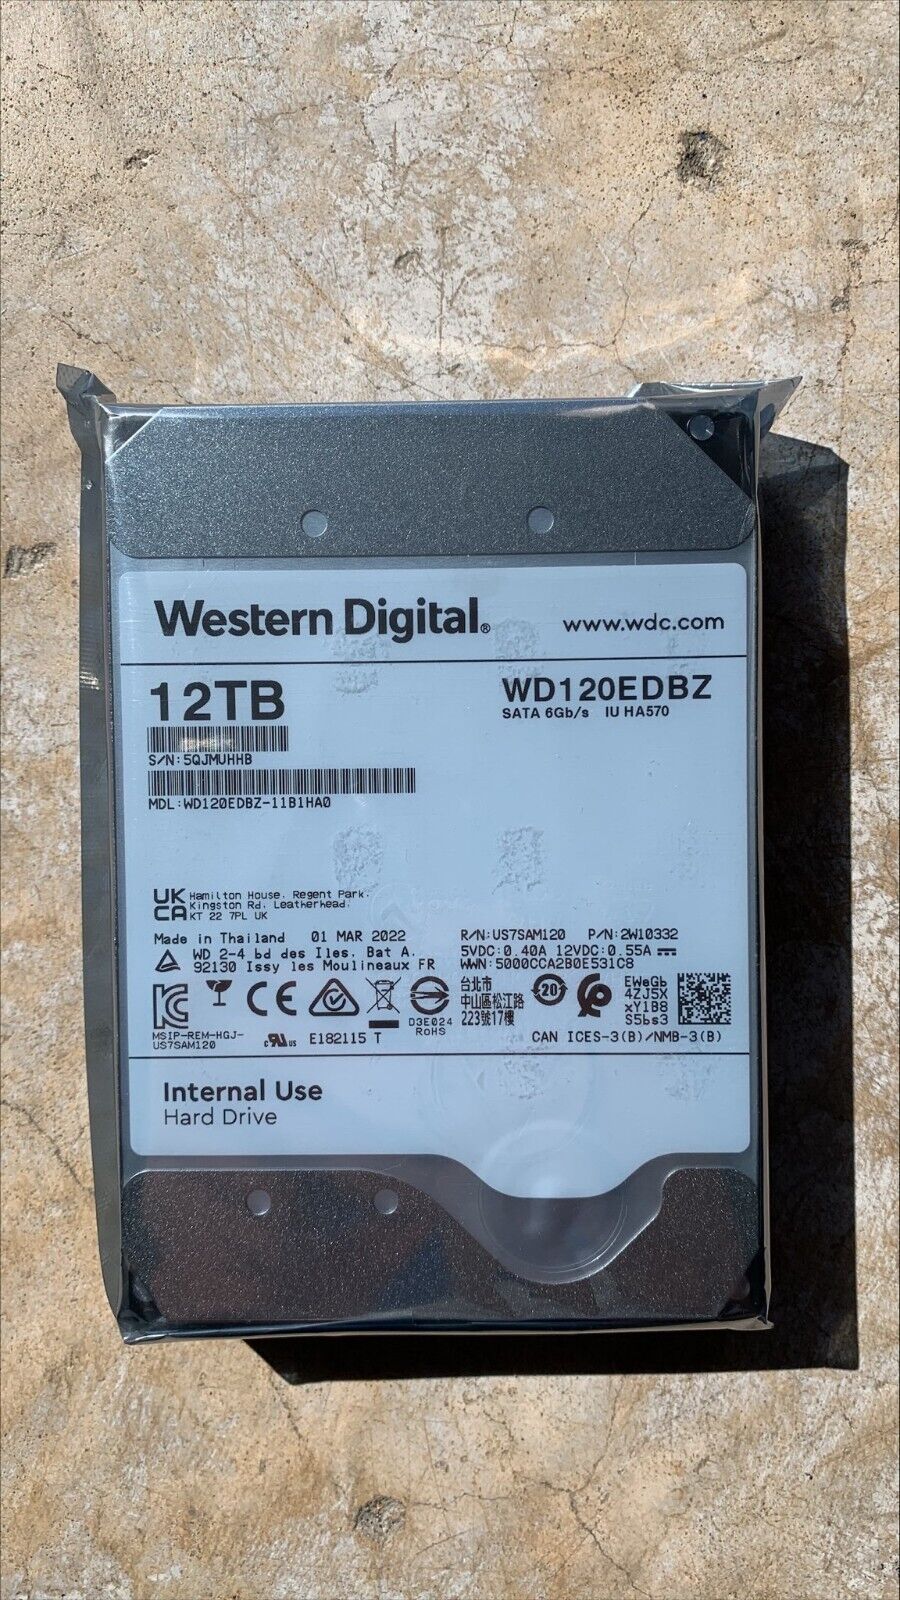 WD Red Plus 12TB NAS Hard Disk Drive  7200 RPM Class SATA 6Gb/s 256MB WD120EDBZ